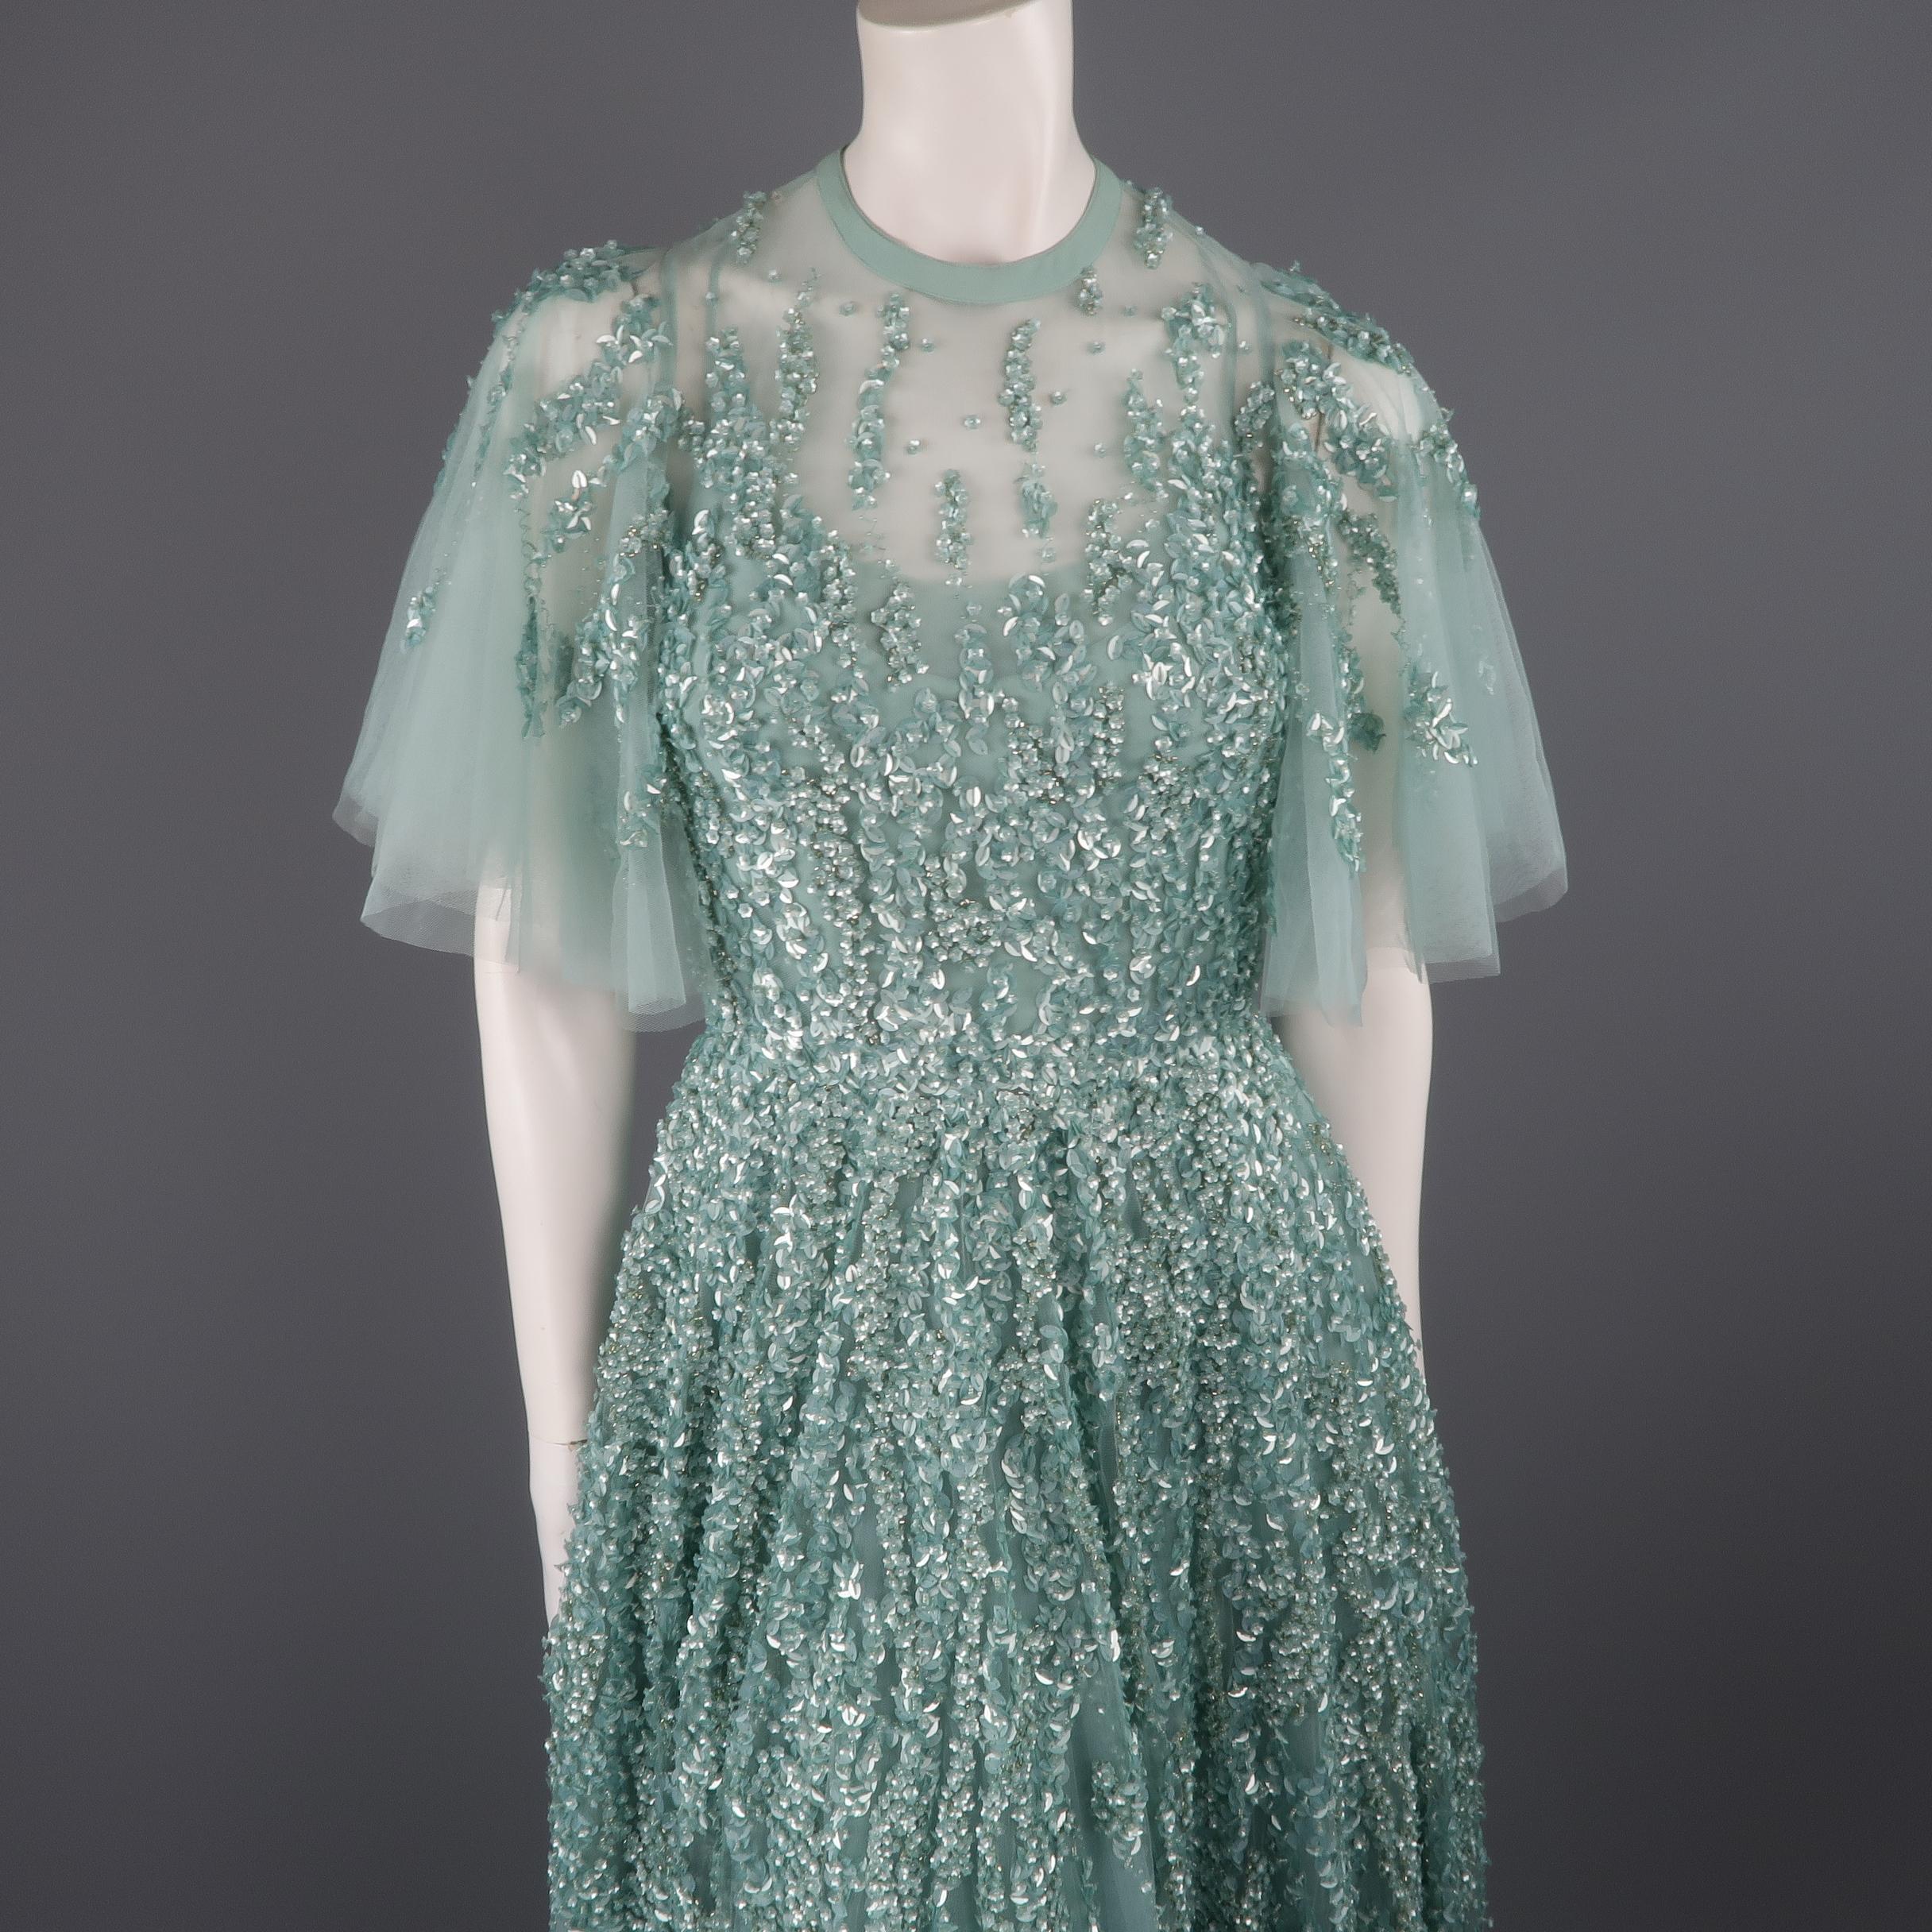 Cette magnifique robe de soirée Elie Saab est réalisée en tulle de soie vert sarcelle:: avec une encolure ronde:: des manches à volants:: une jupe ample et des perles de sequins floraux. Neuf avec étiquettes. Marqué : FR 36
 
Mesures : 
L'épaule :